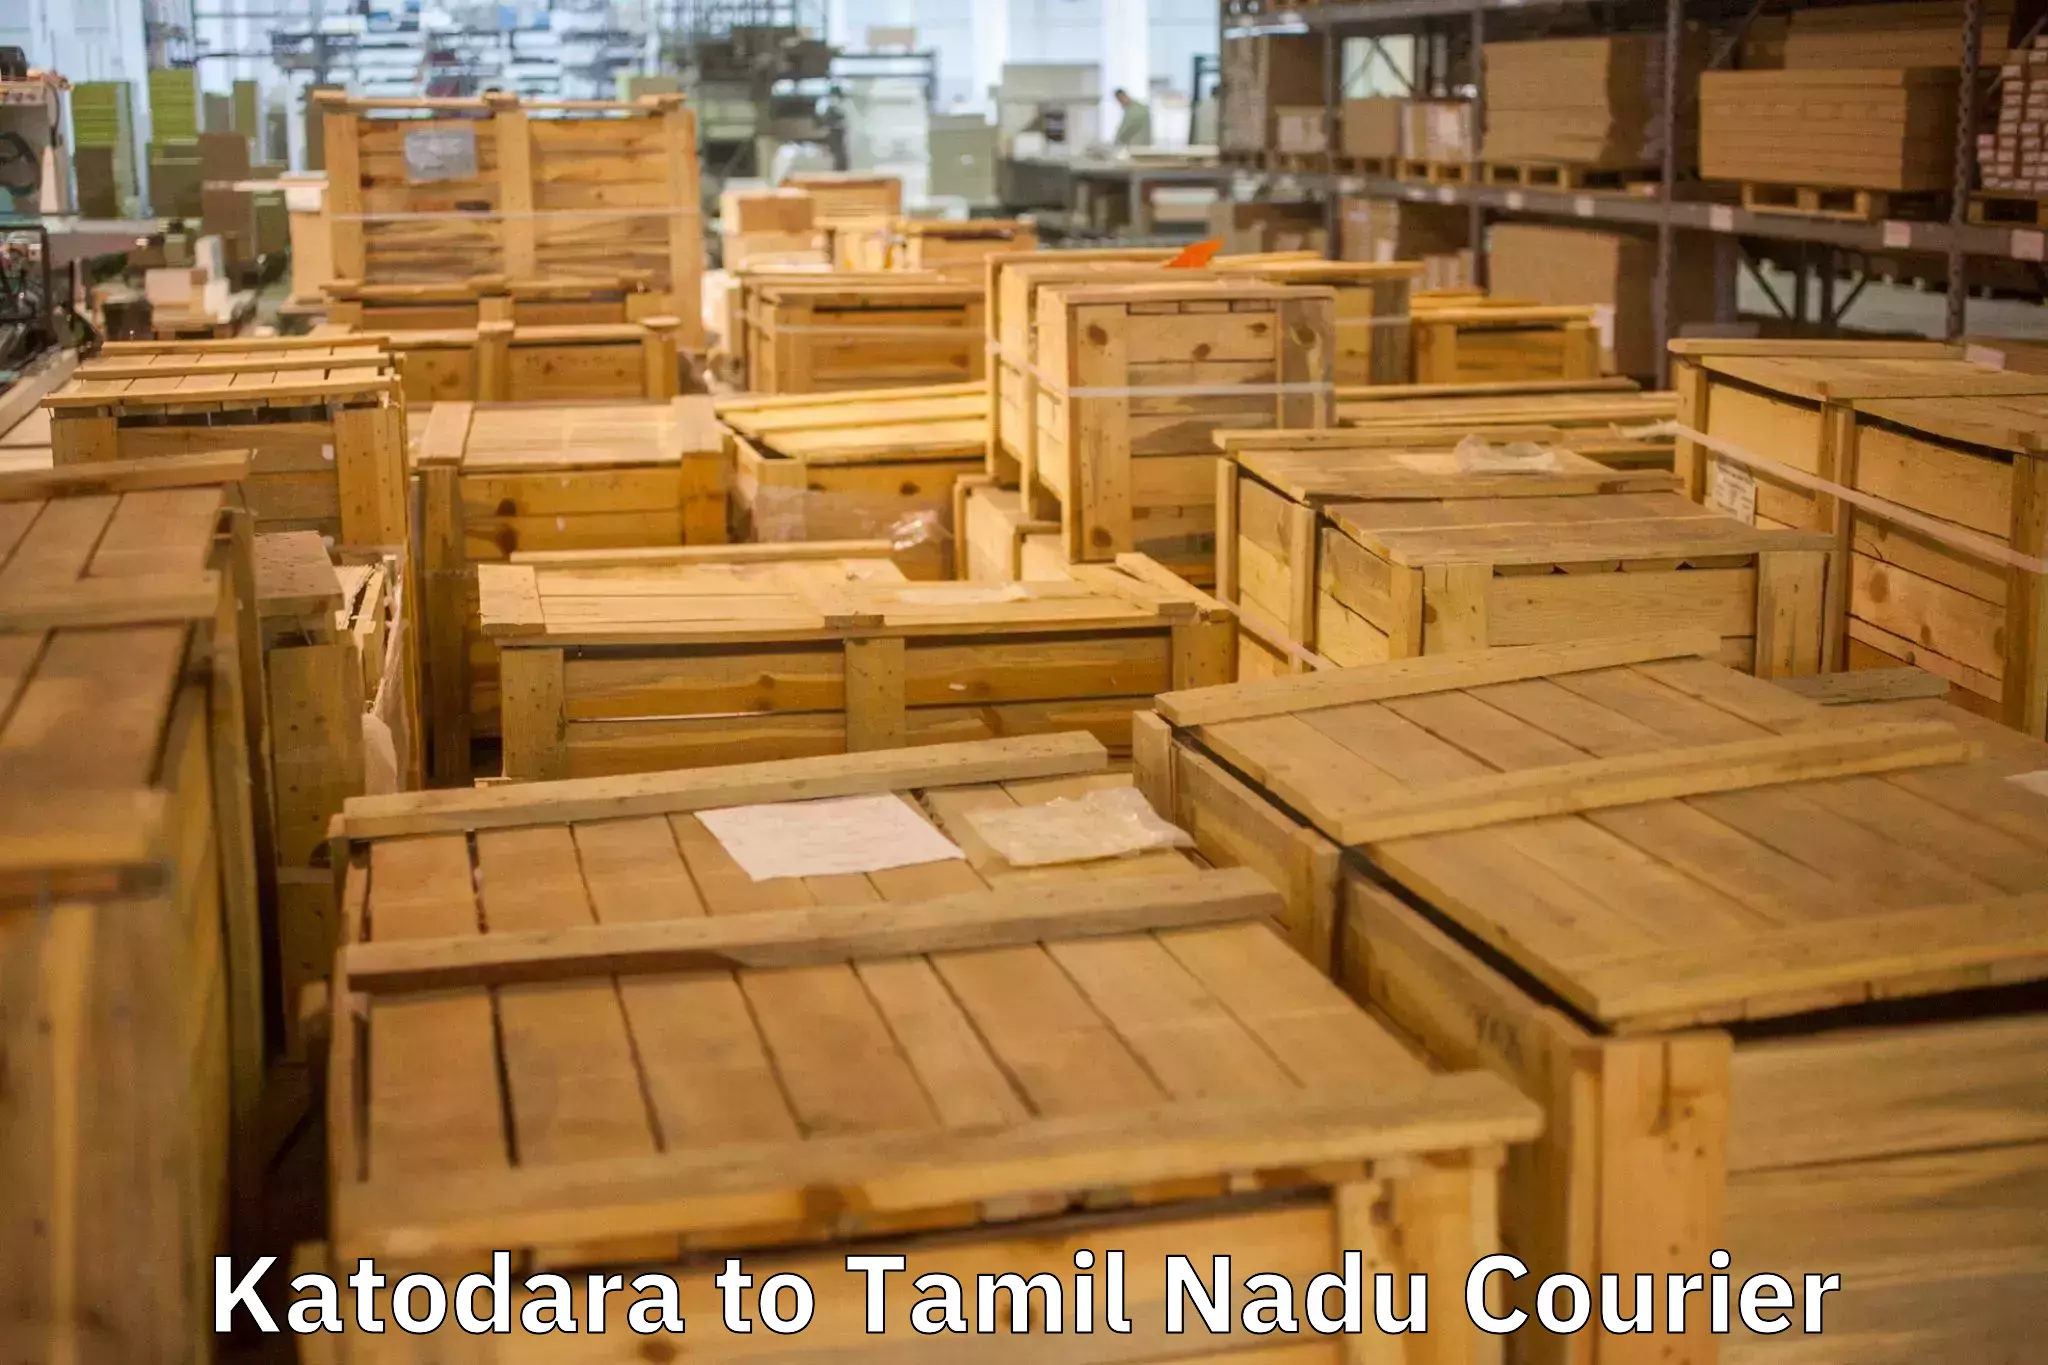 Stress-free household moving Katodara to Chennai Port